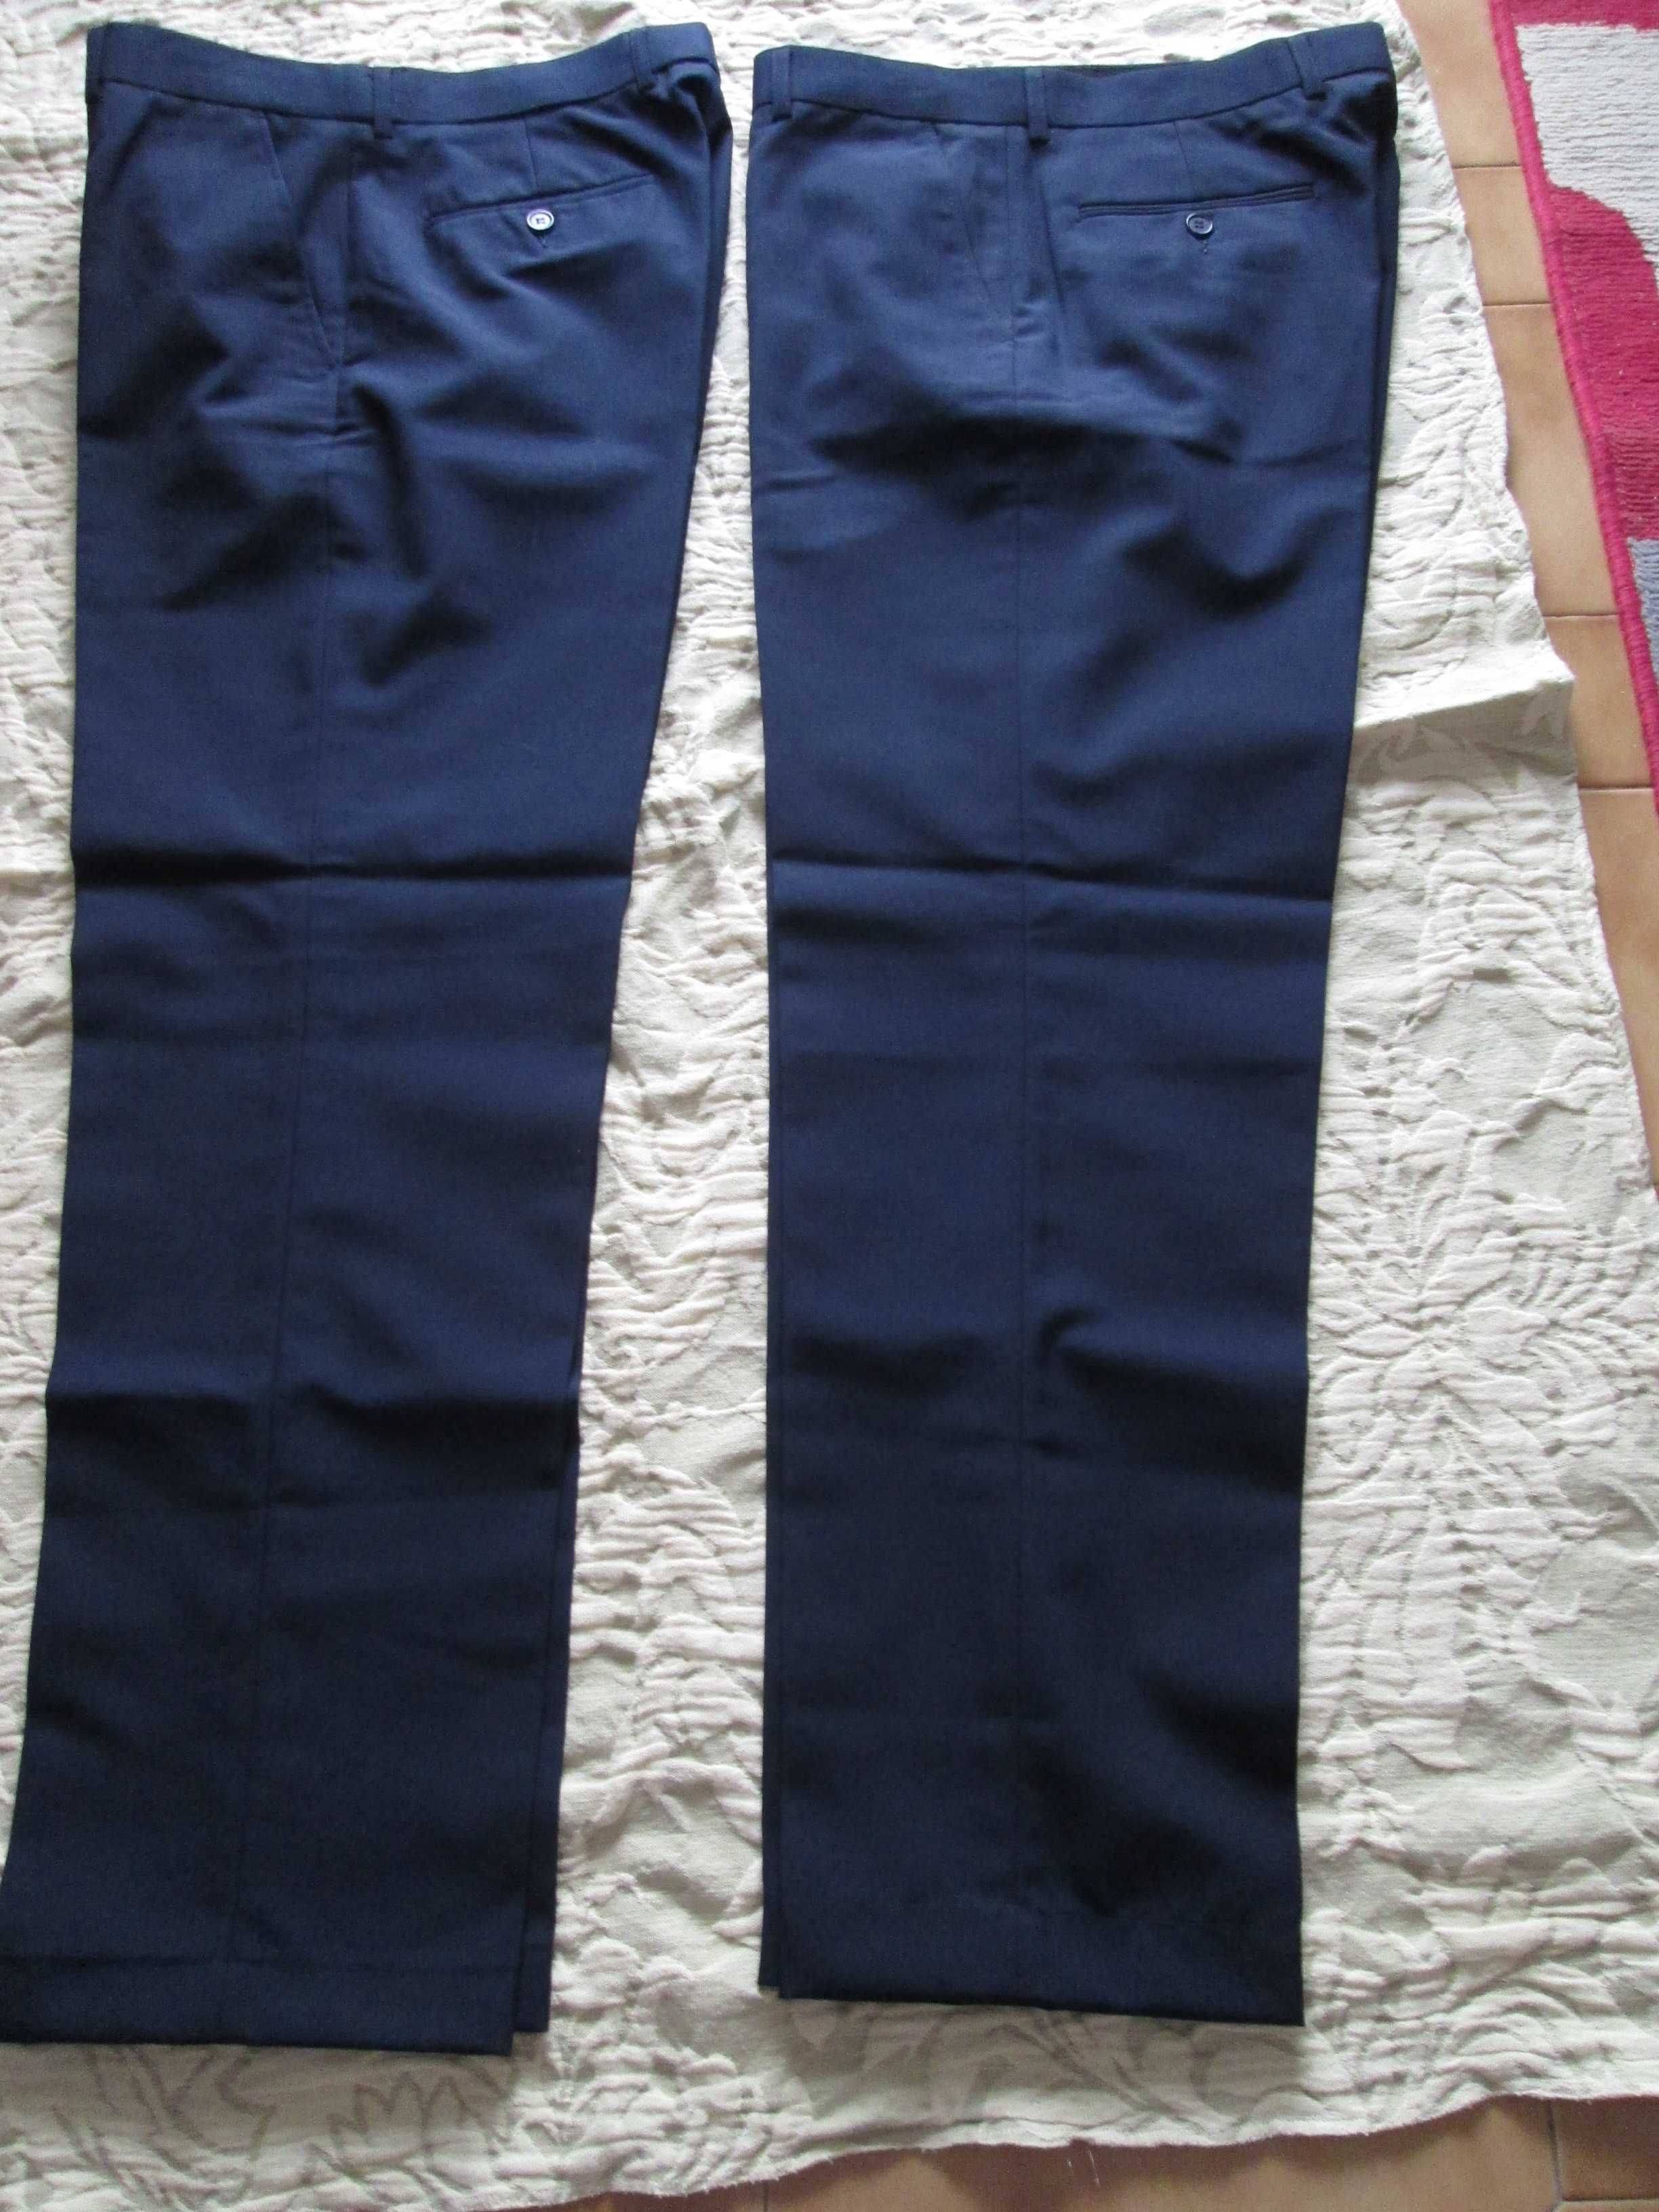 2 calças homem, cor azul escuro, nº 42